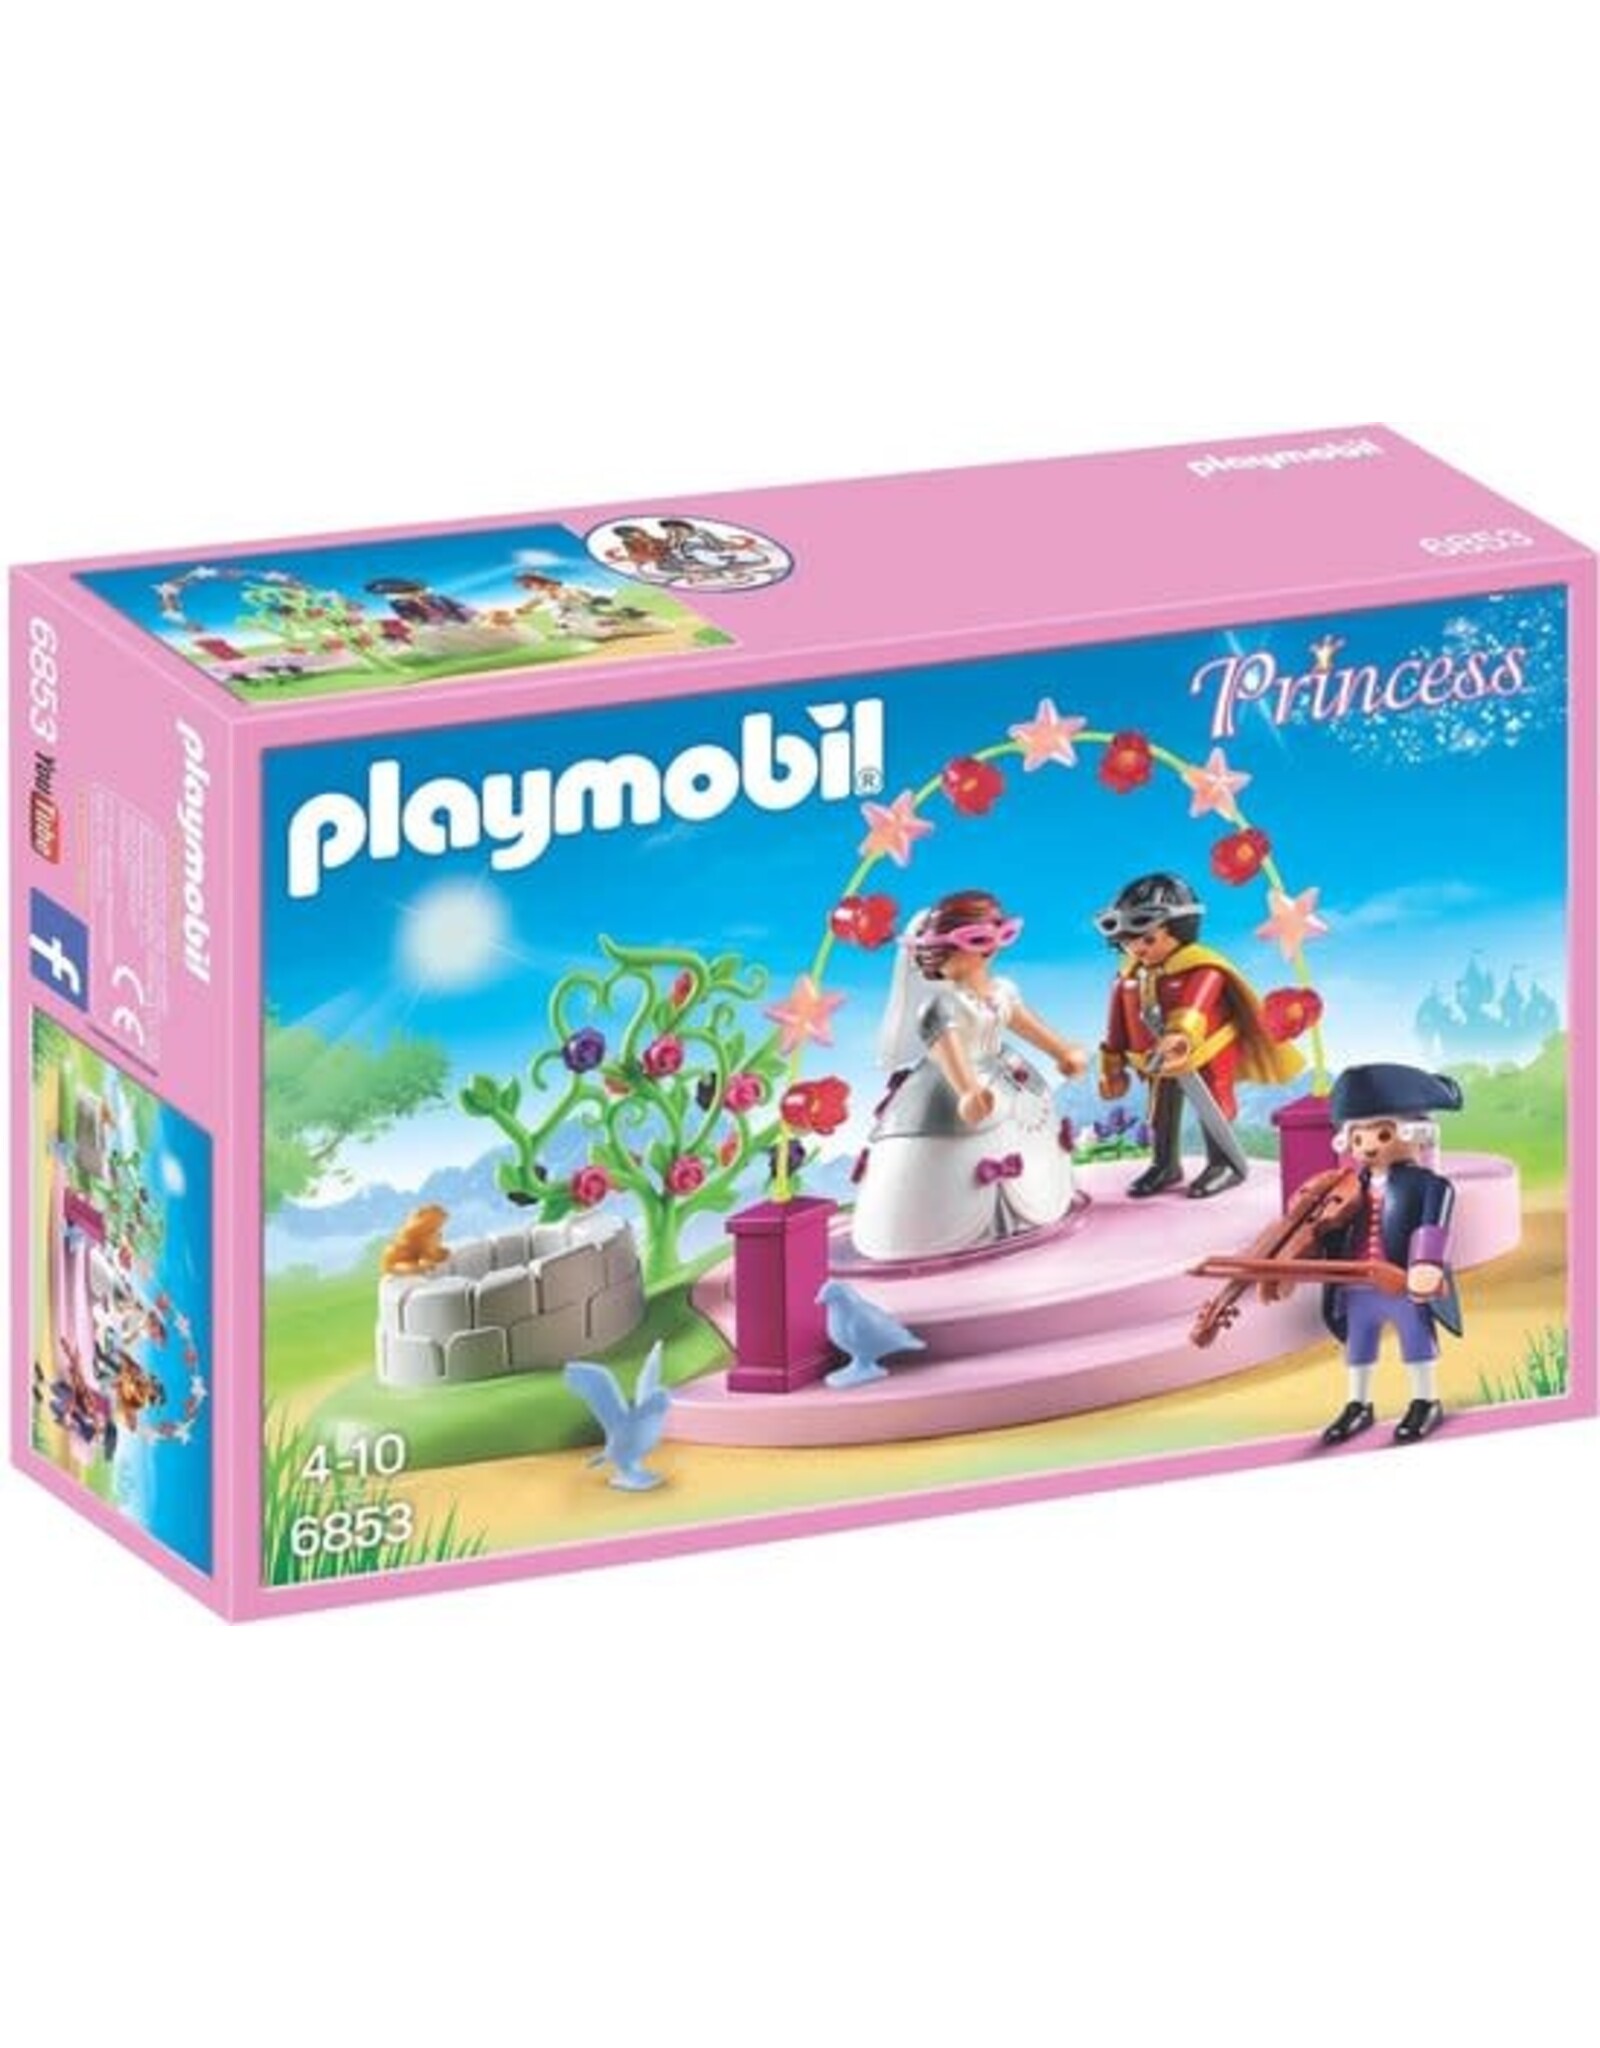 Playmobil Playmobil Princess 6853 Gemaskerd Koninklijk Paar